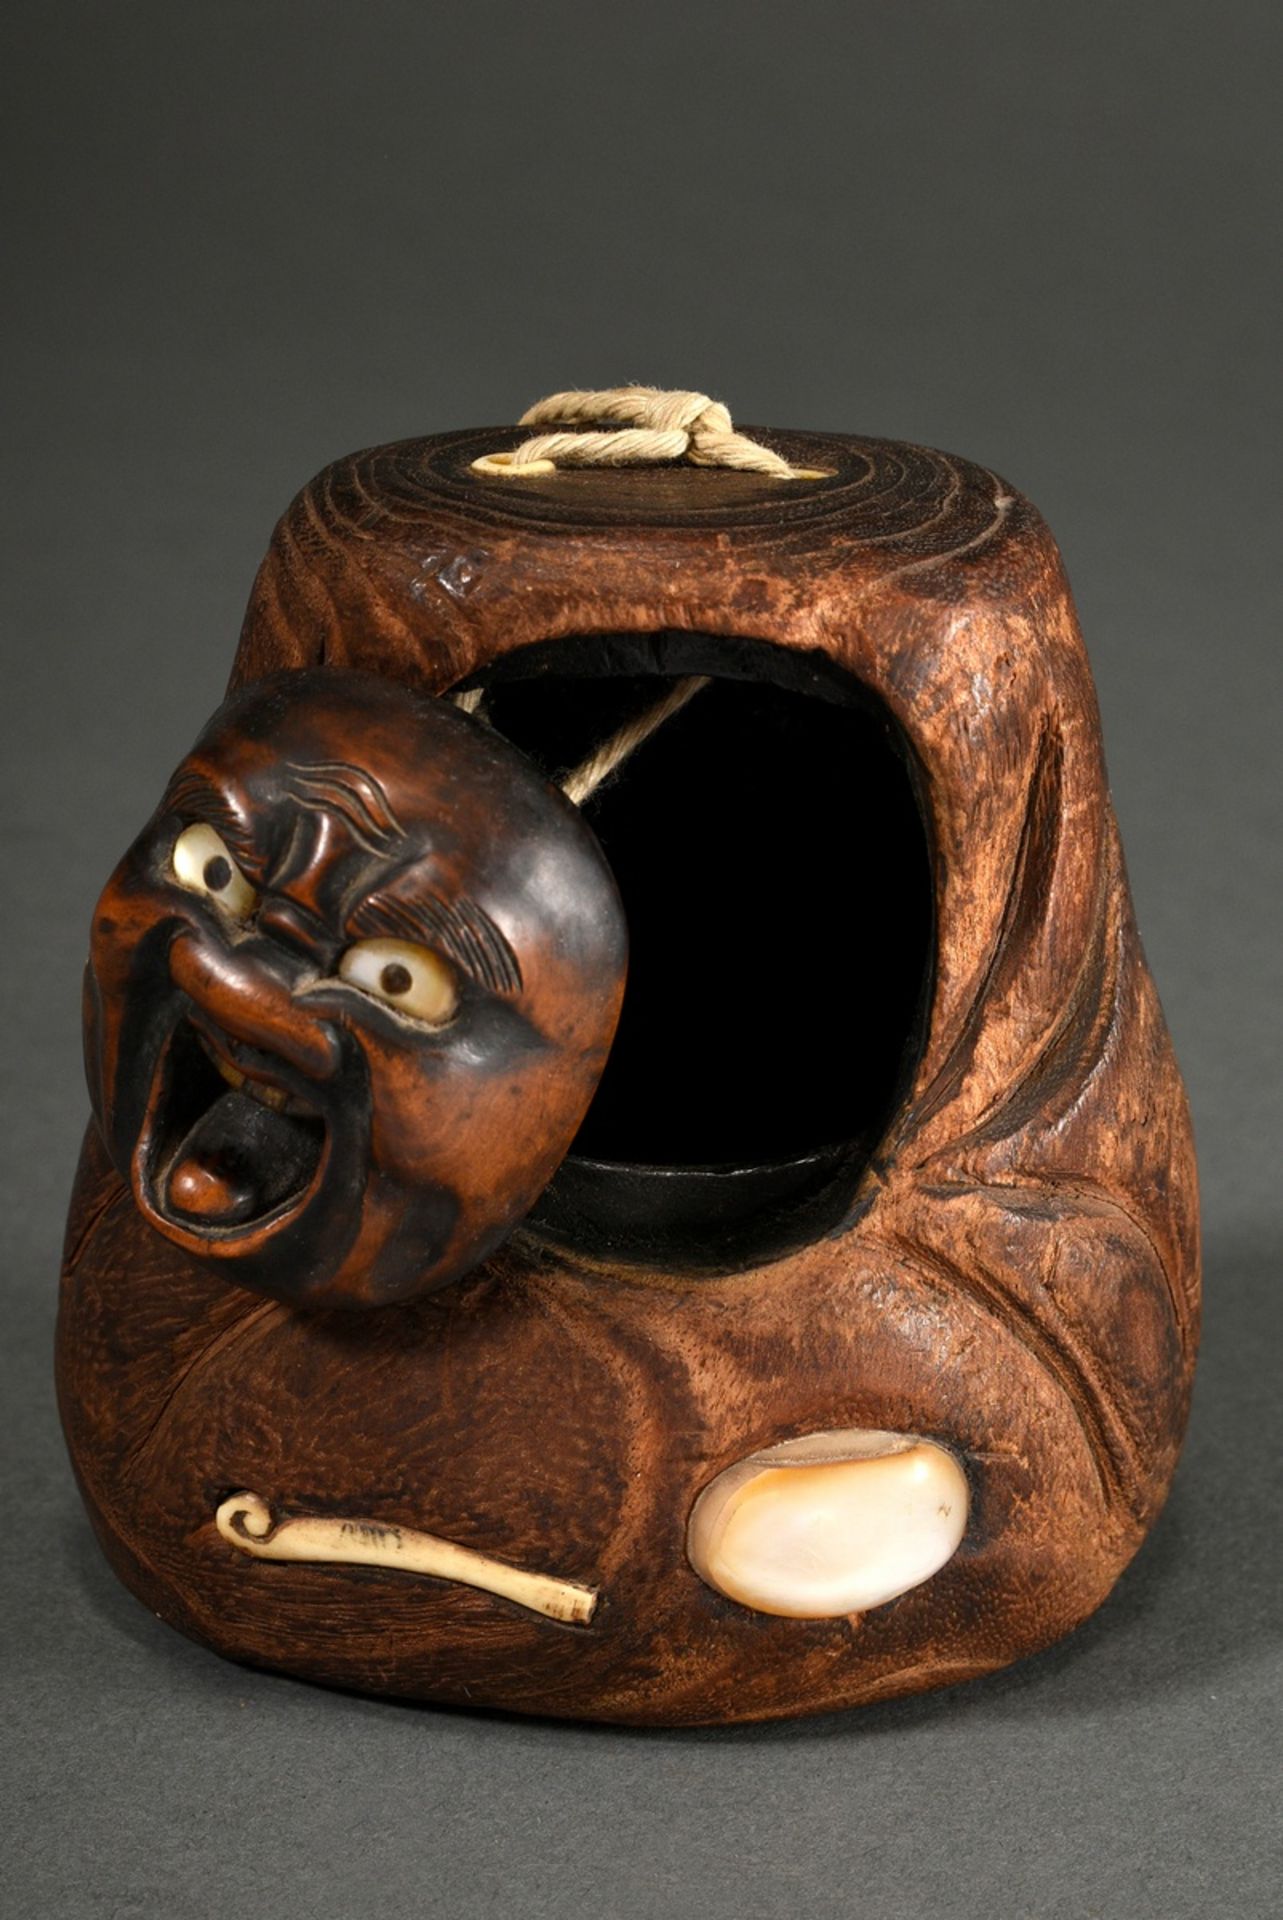 Hinoki Holz Tonkotsu Tabakbehälter mit Buchsbaum Maskendeckel „Daruma“ sowie Perlmutt- und Hirschho - Bild 4 aus 4